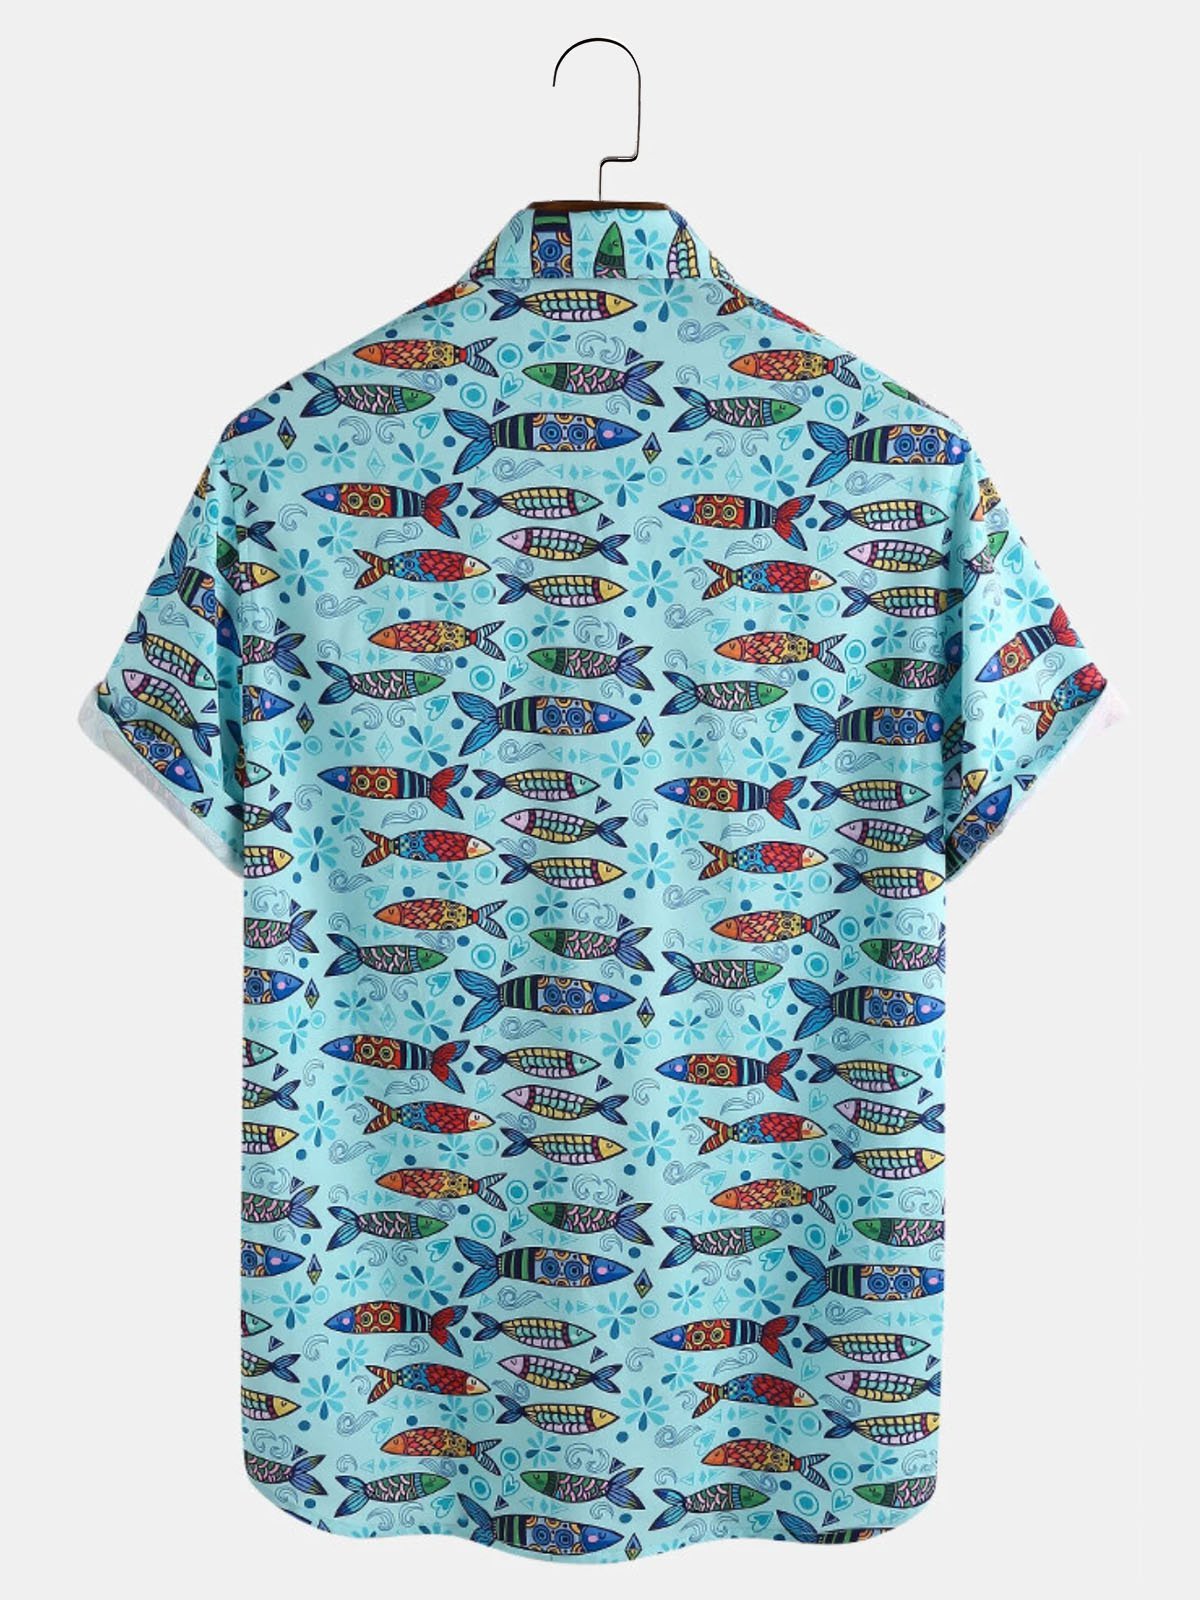 Mens Fish Ocean Creatures Printed Breathable Hawaiian Shirts